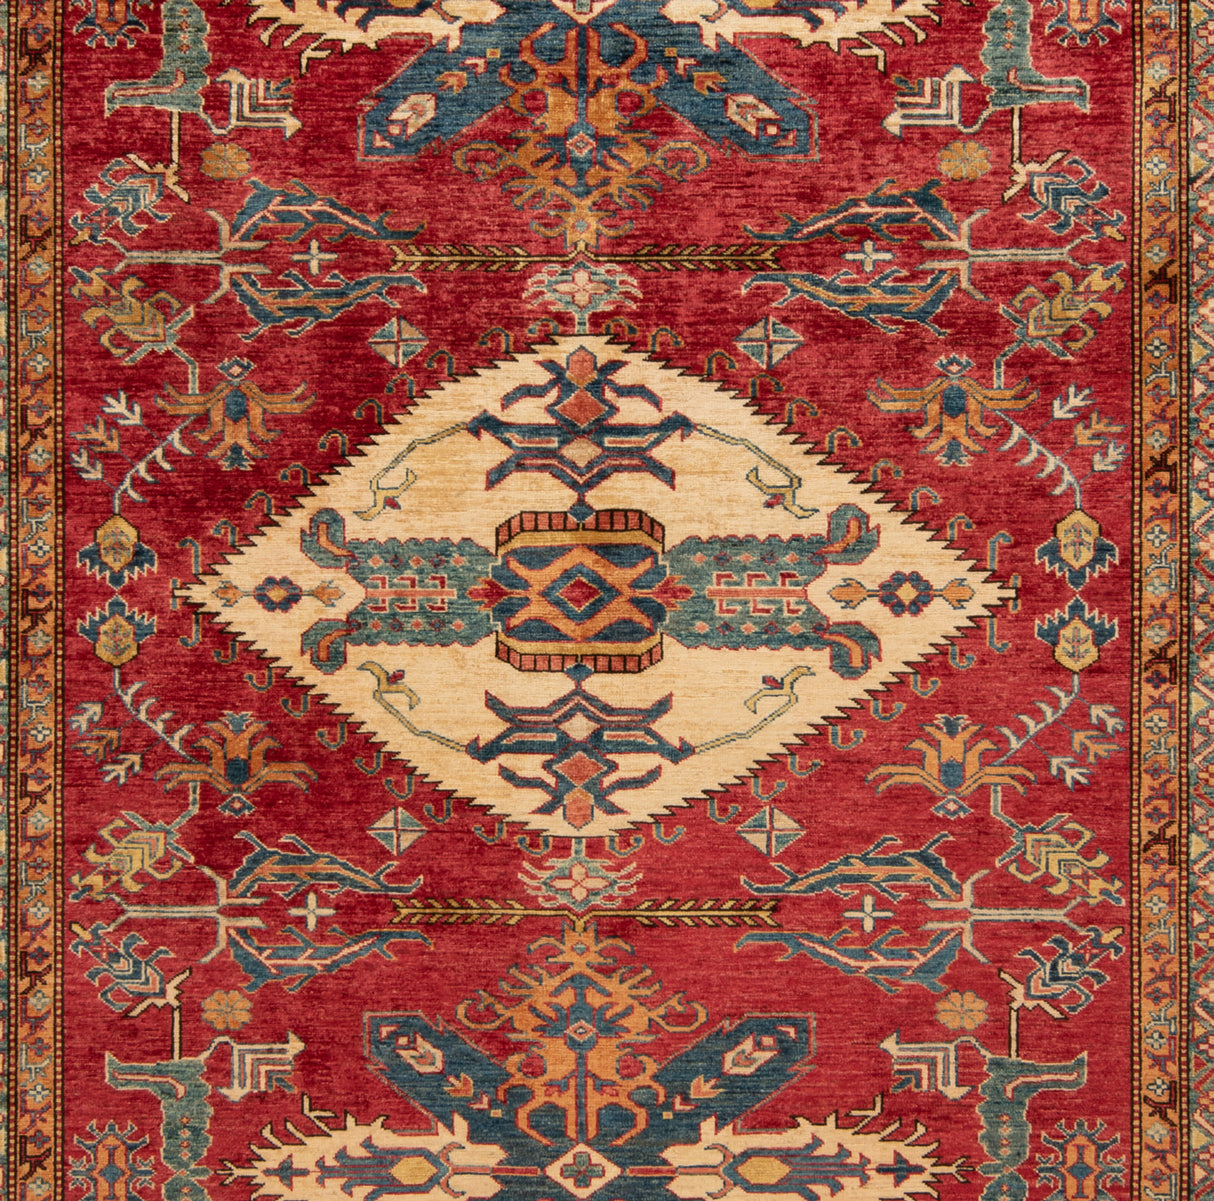 Carpetes finos de cazaque | 303 x 242 cm